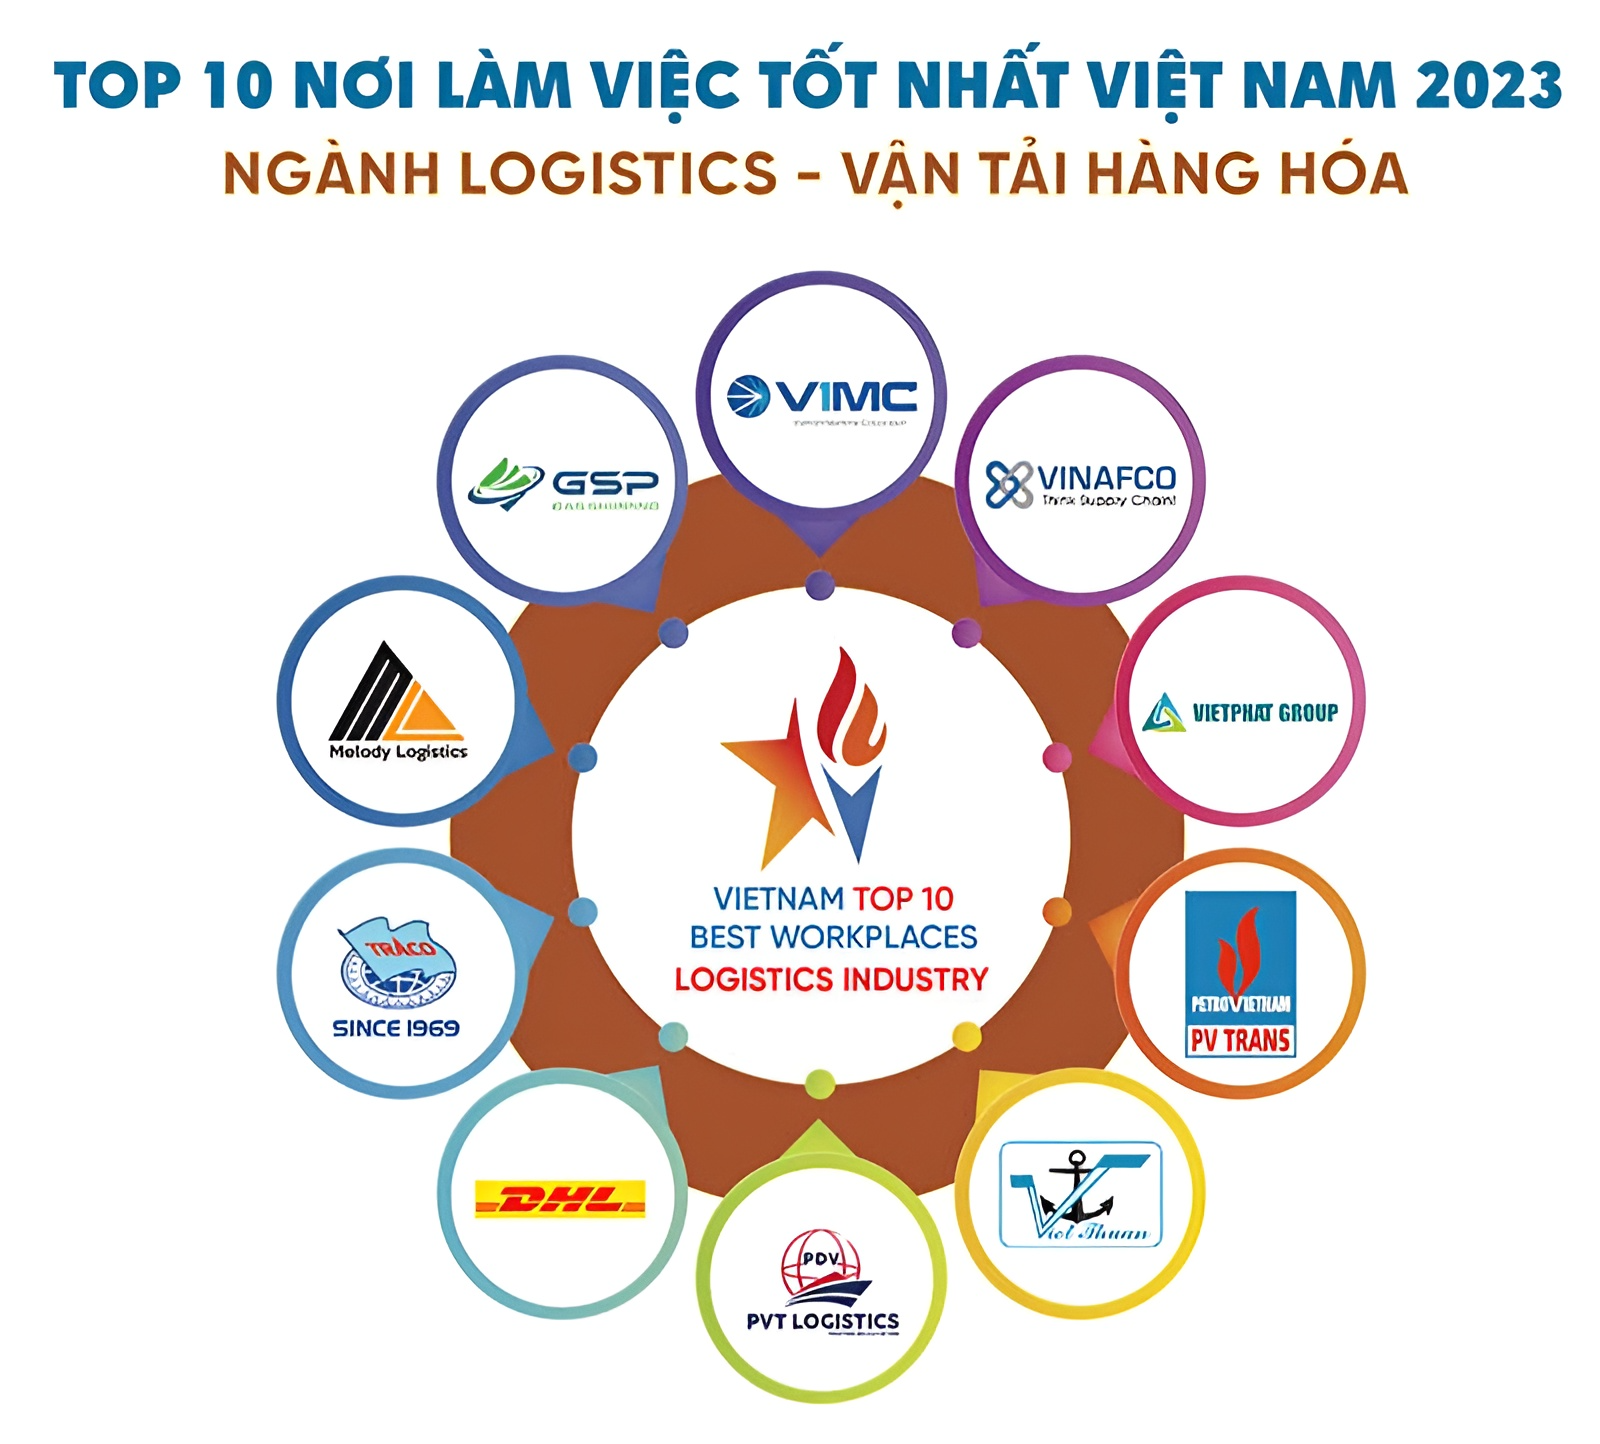 Top 10 nơi làm việc tốt nhất Việt Nam ngành Logistics - Vận tải hàng hóa